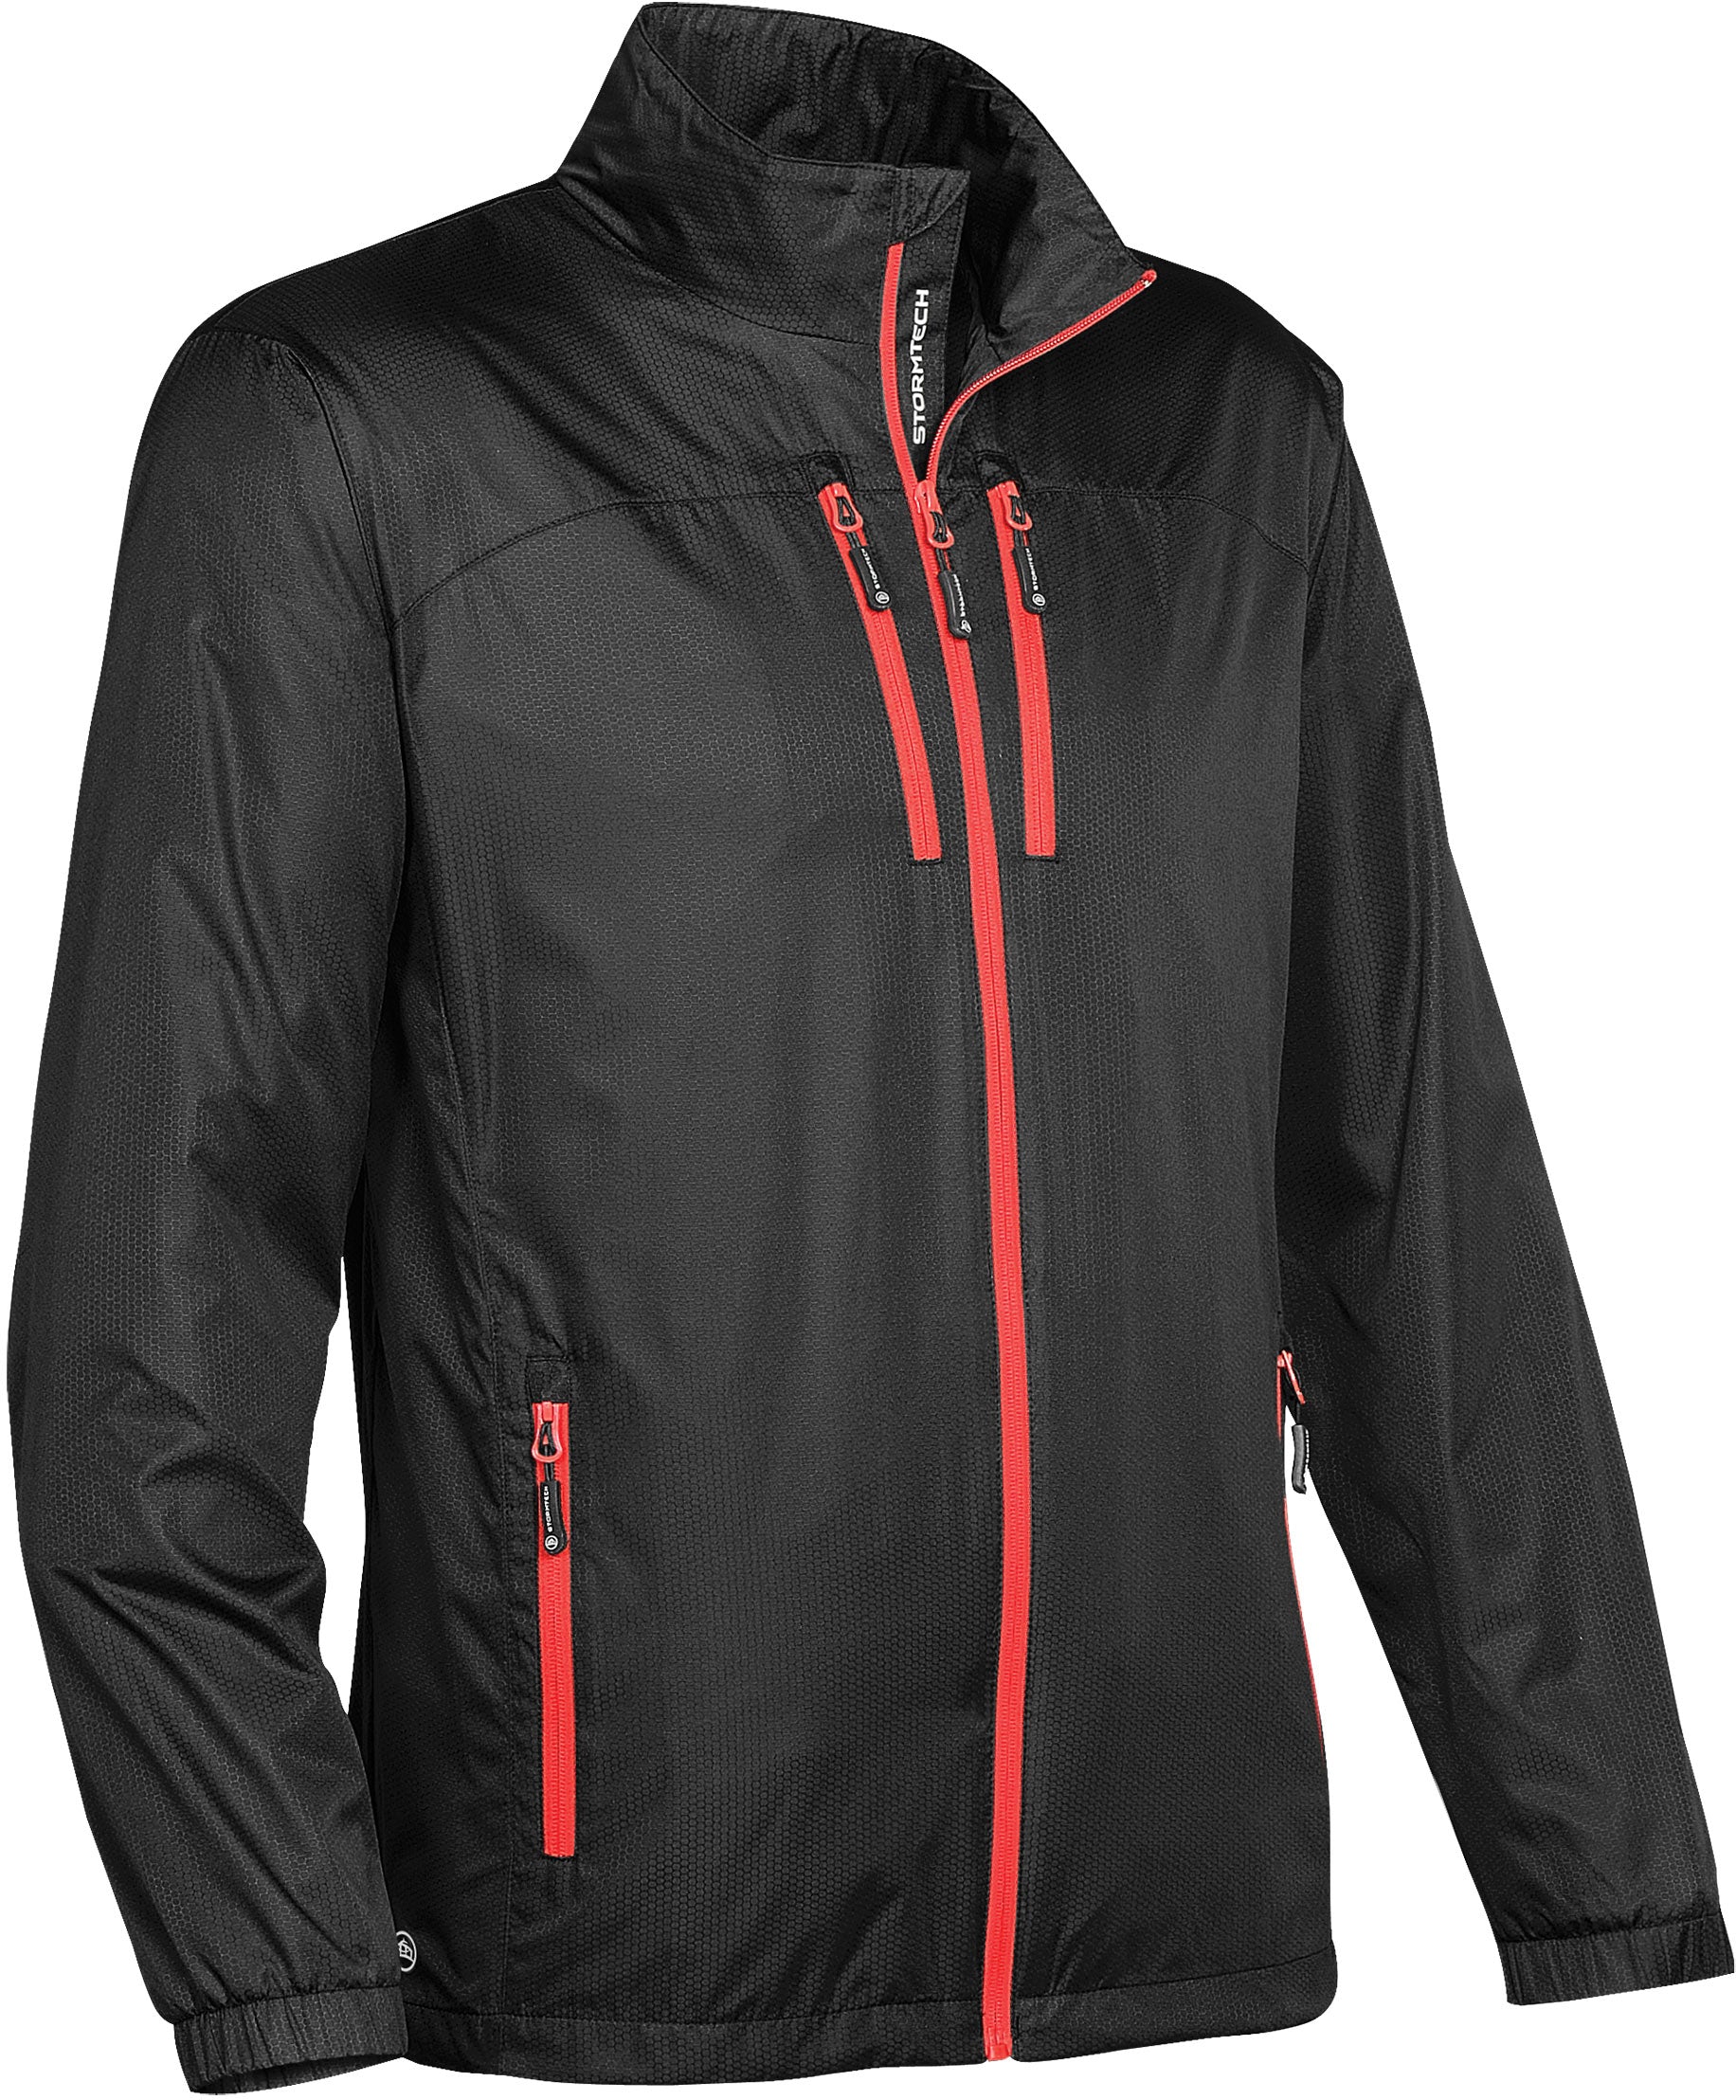 Women's Mistral Fleece Jacket - Stormtech USA Retail